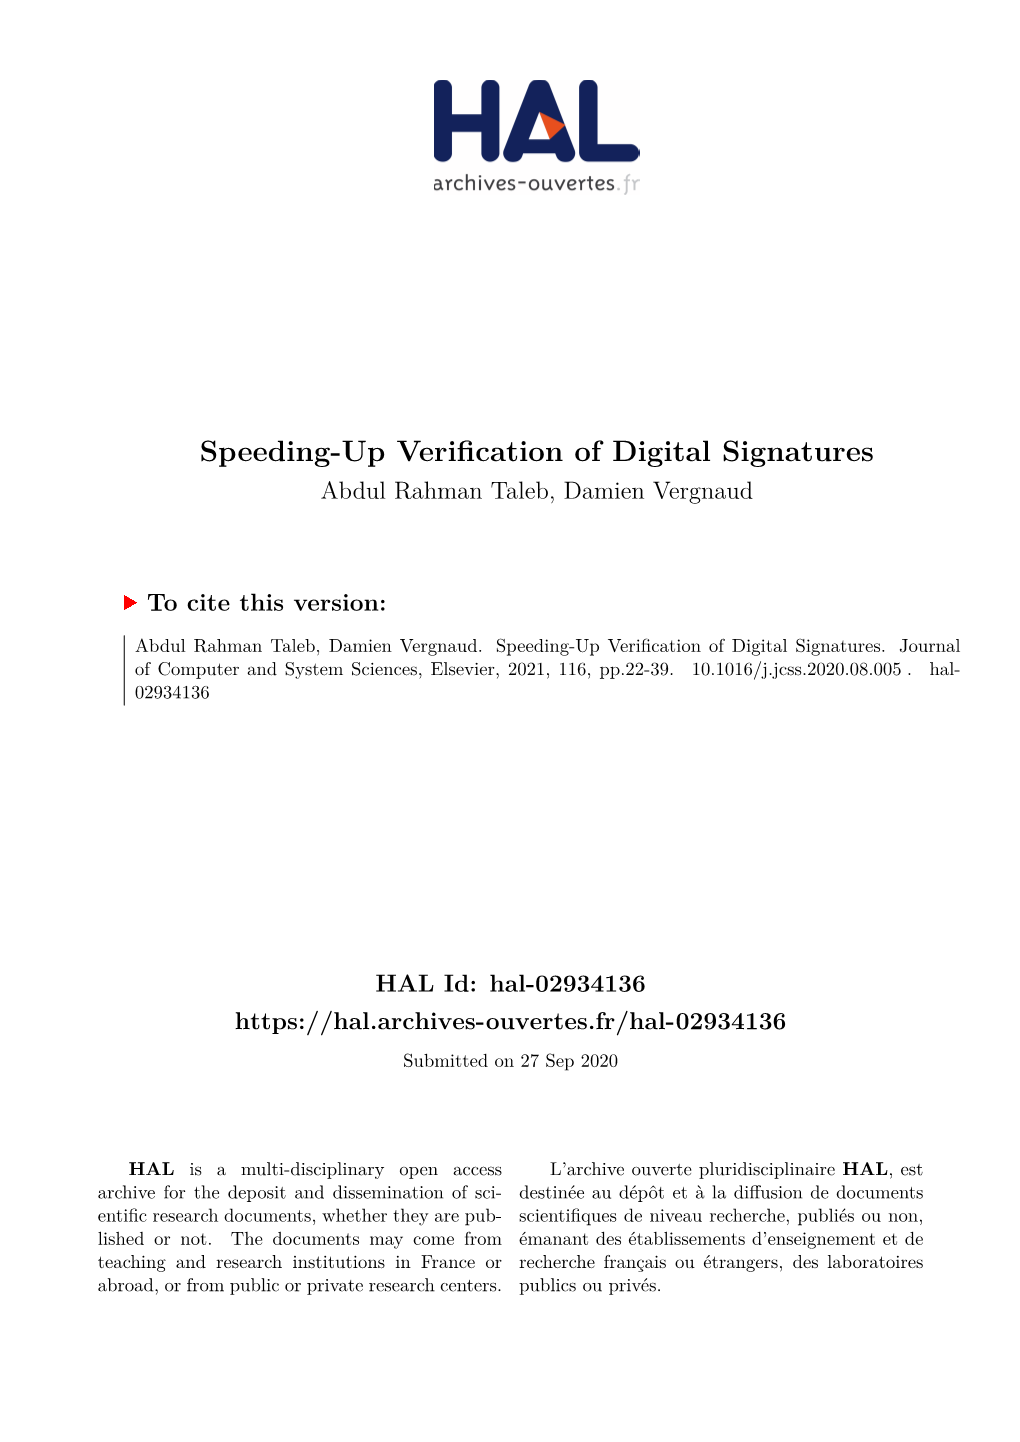 Speeding-Up Verification of Digital Signatures Abdul Rahman Taleb, Damien Vergnaud